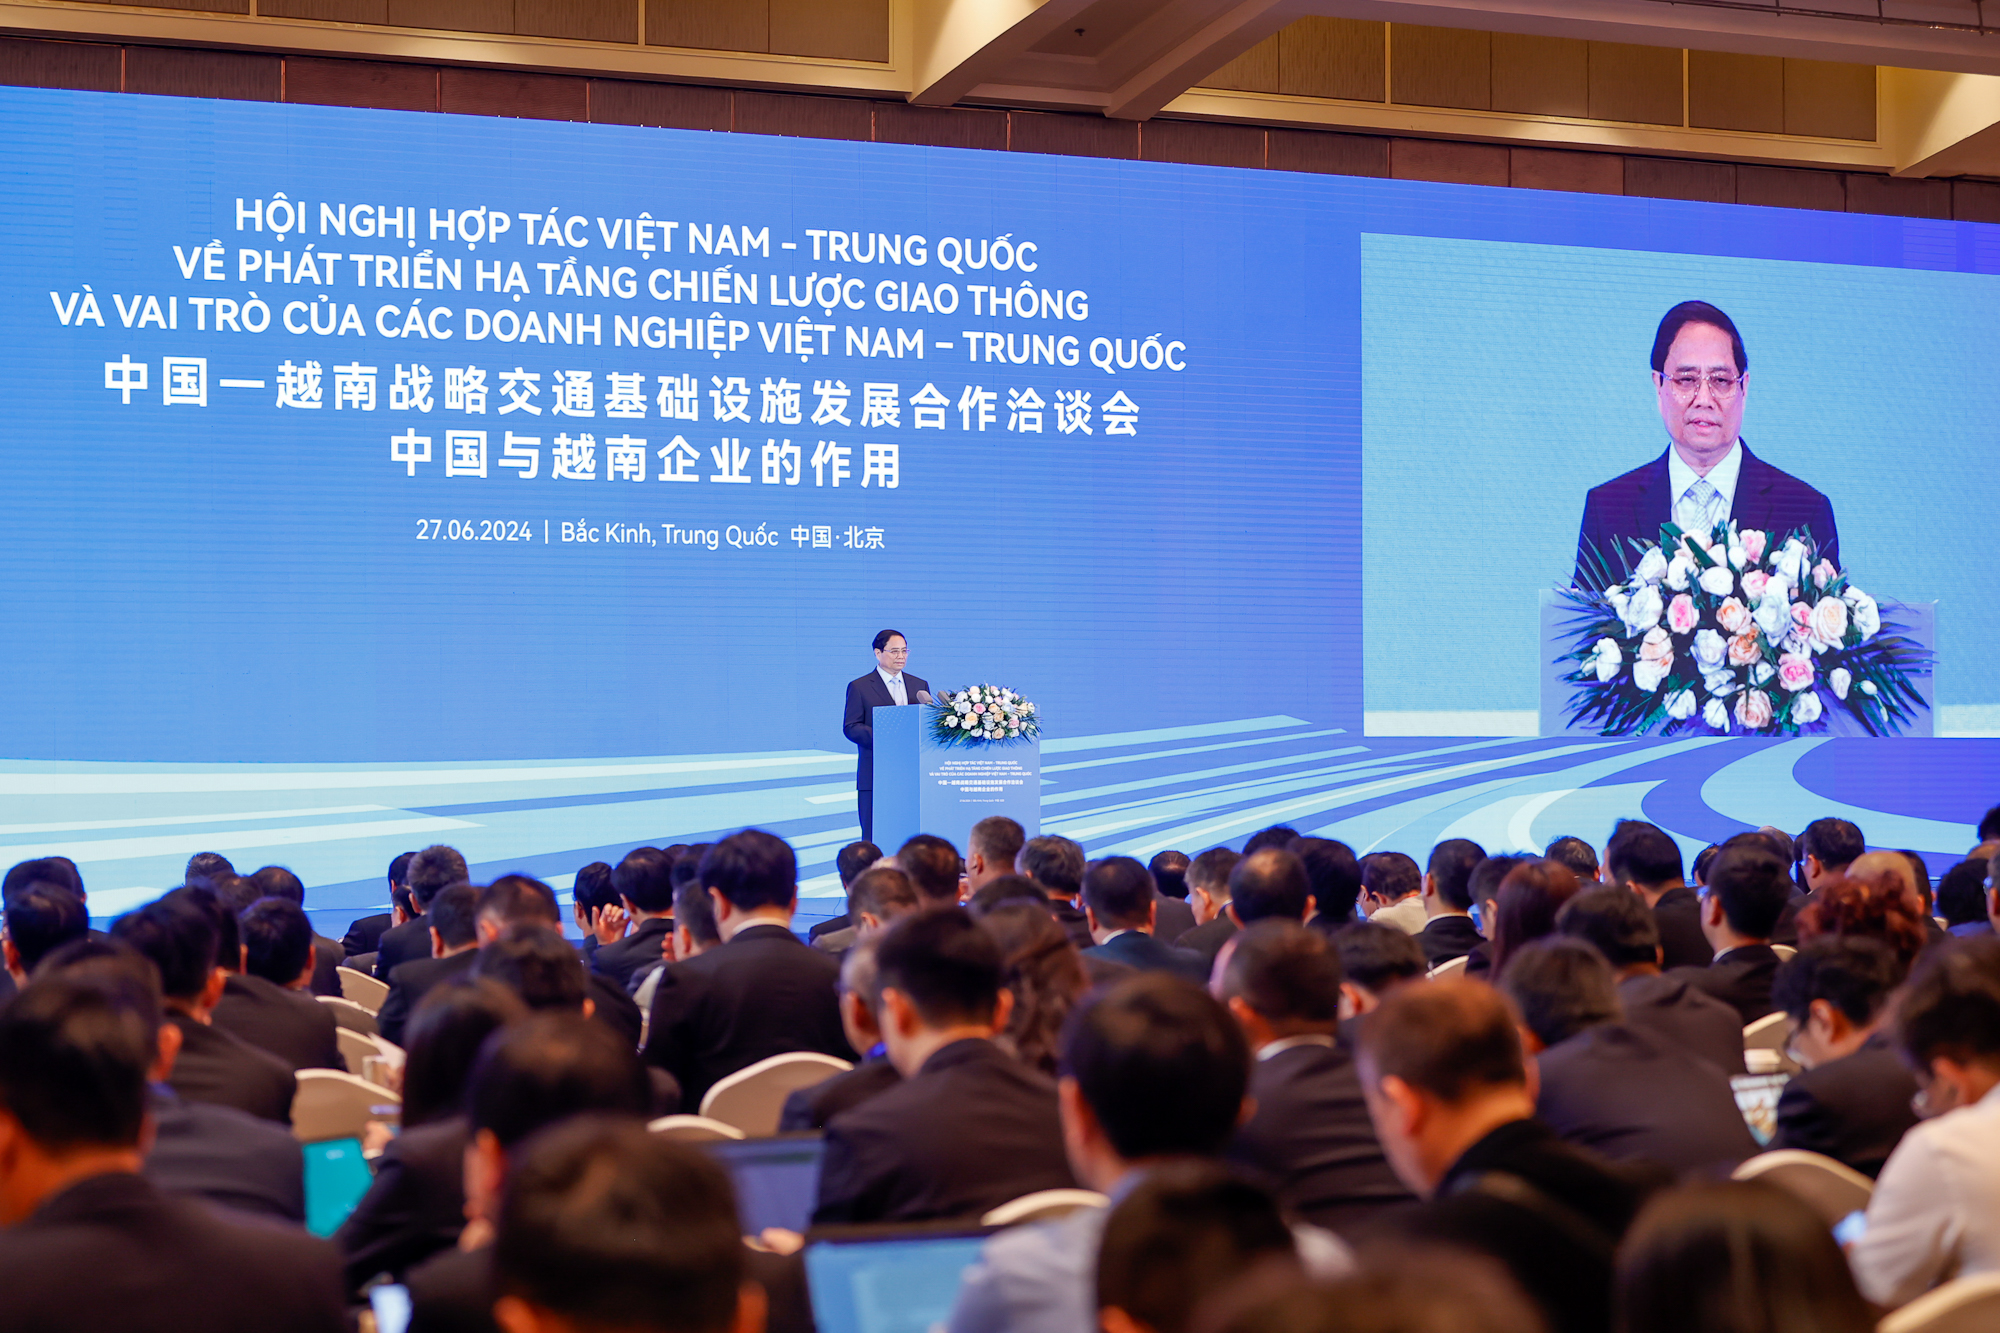 Thủ tướng kêu gọi các tập đoàn, doanh nghiệp lớn (cả nhà nước và tư nhân) của Trung Quốc tham gia đầu tư, đấu thầu, xây dựng các công trình, dự án lớn trong nhiều lĩnh vực khác nhau, đặc biệt là các lĩnh vực đột phá như giao thông, chuyển đổi số, chuyển đổi xanh, năng lượng tái tạo - Ảnh: VGP/Nhật Bắc